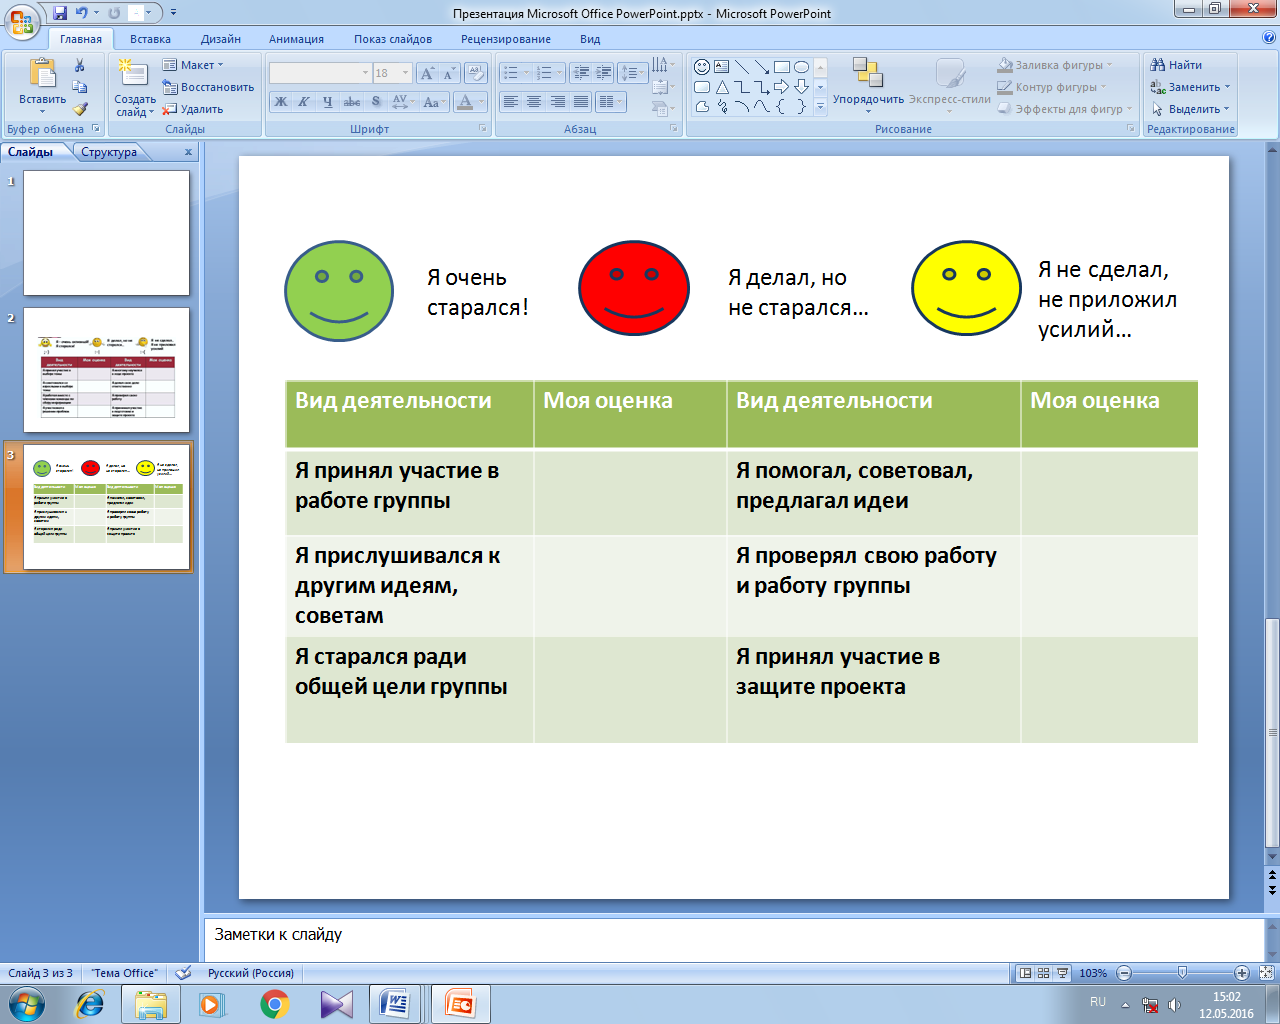 Программа проектной деятельности в 1 классе (по УМК Школа Росии, Окружающий мир)